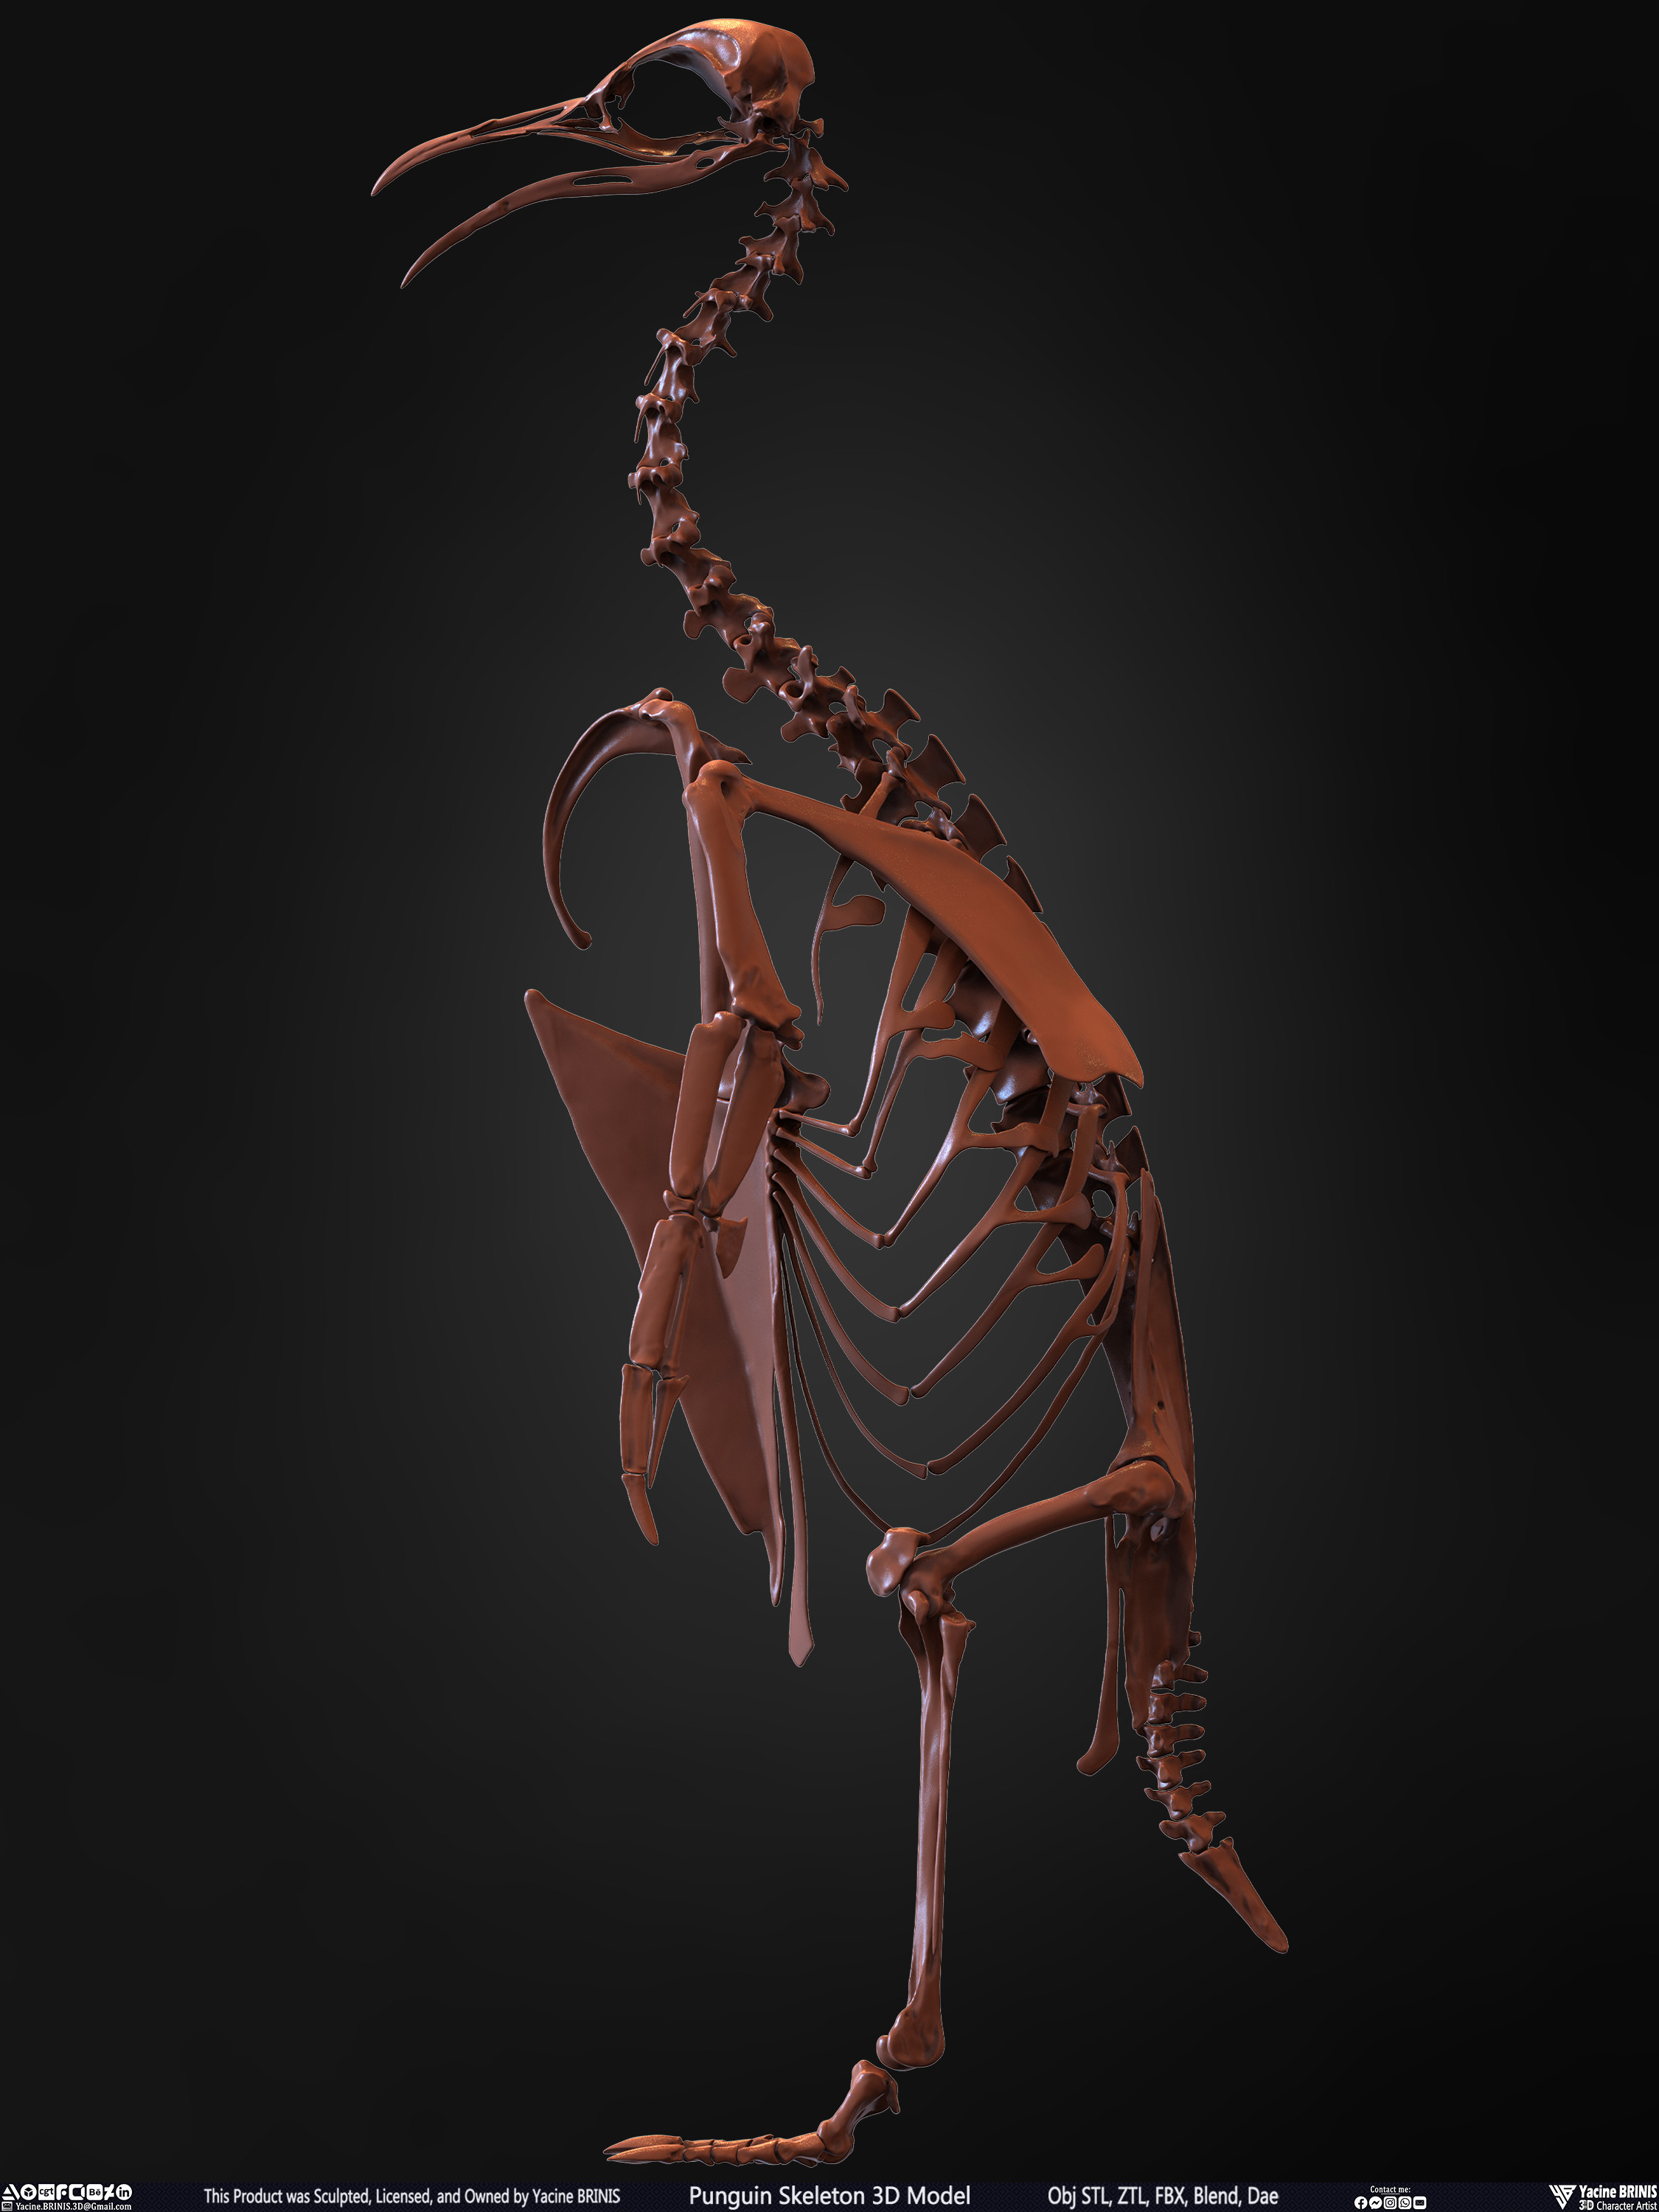 Penguin Skeleton 3D Model Sculpted by Yacine BRINIS Set 011